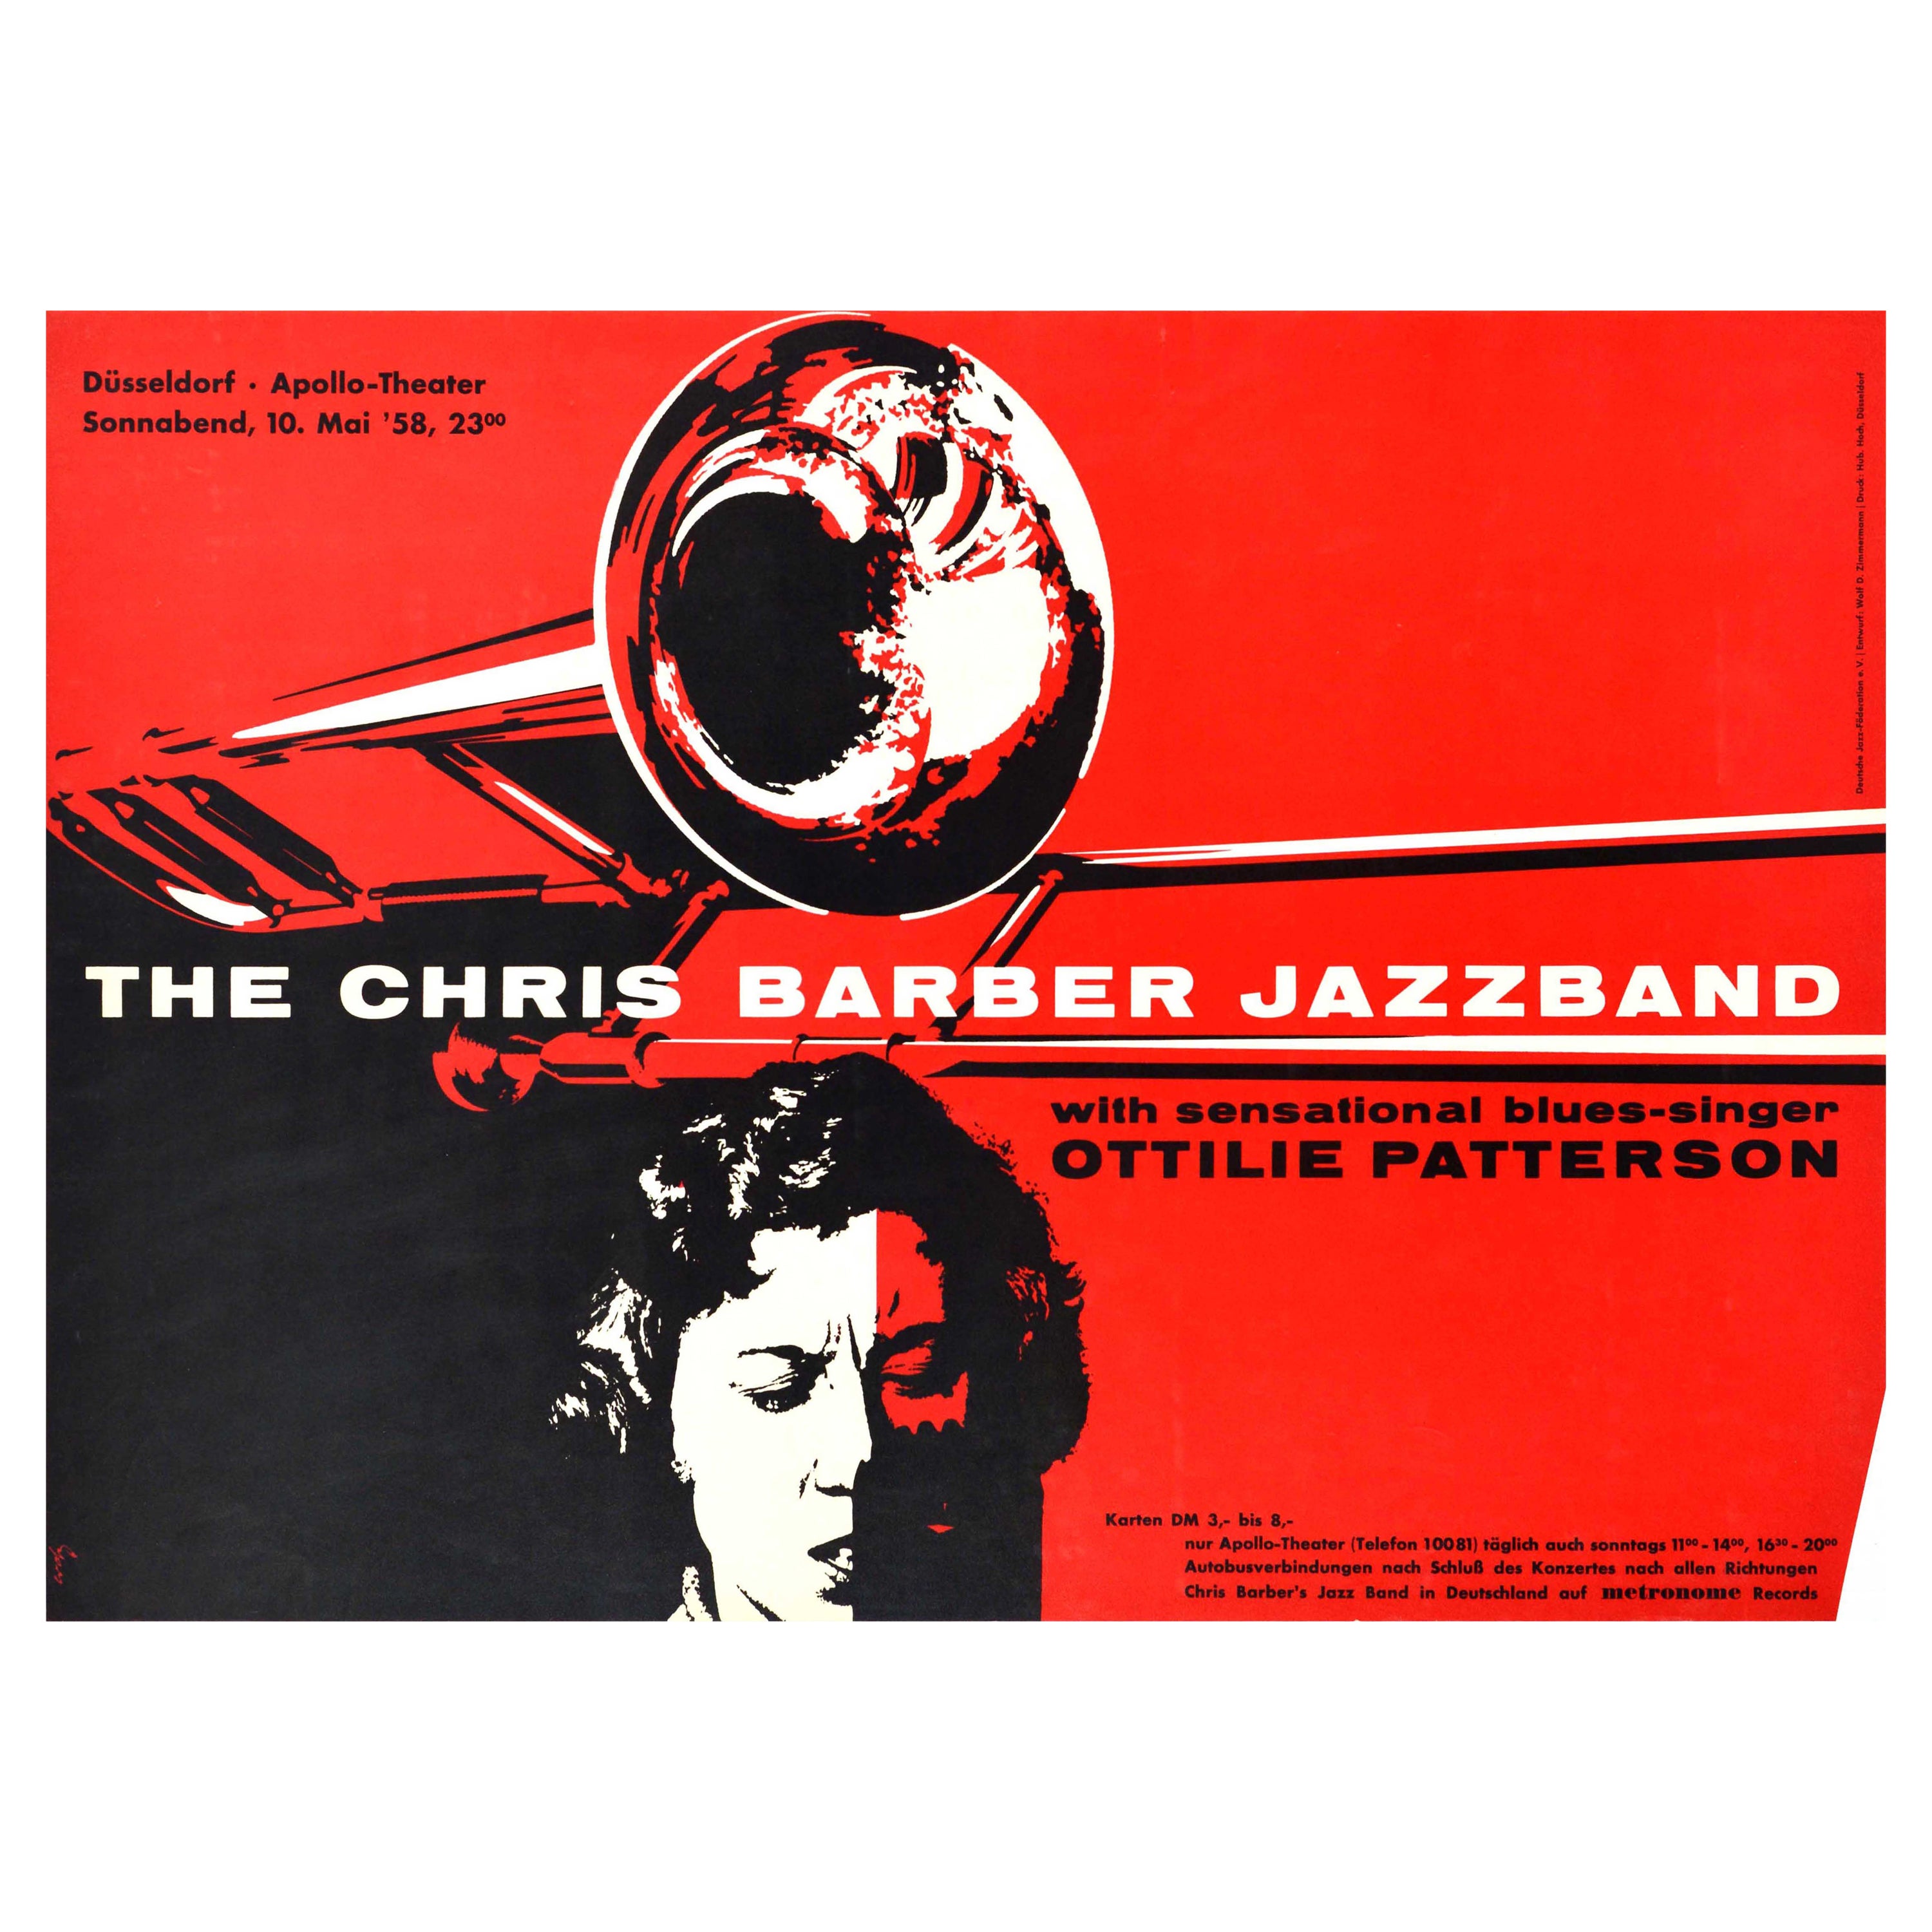 Original Vintage Music Concert Poster The Chris Barber Jazz Band Trombone Design For Sale